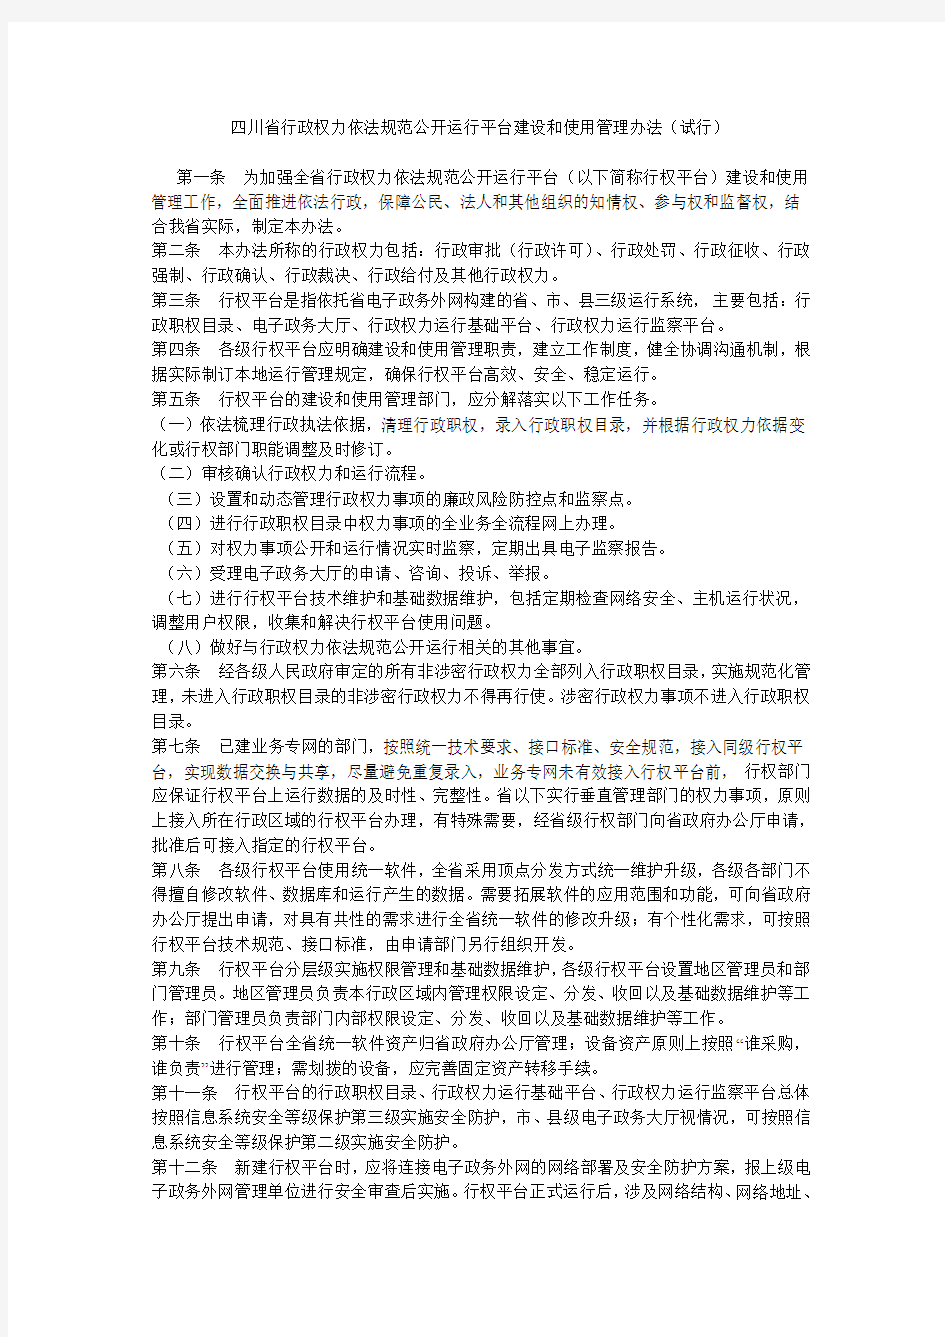 四川省行政权力依法规范公开运行平台建设和使用管理办法(试行)